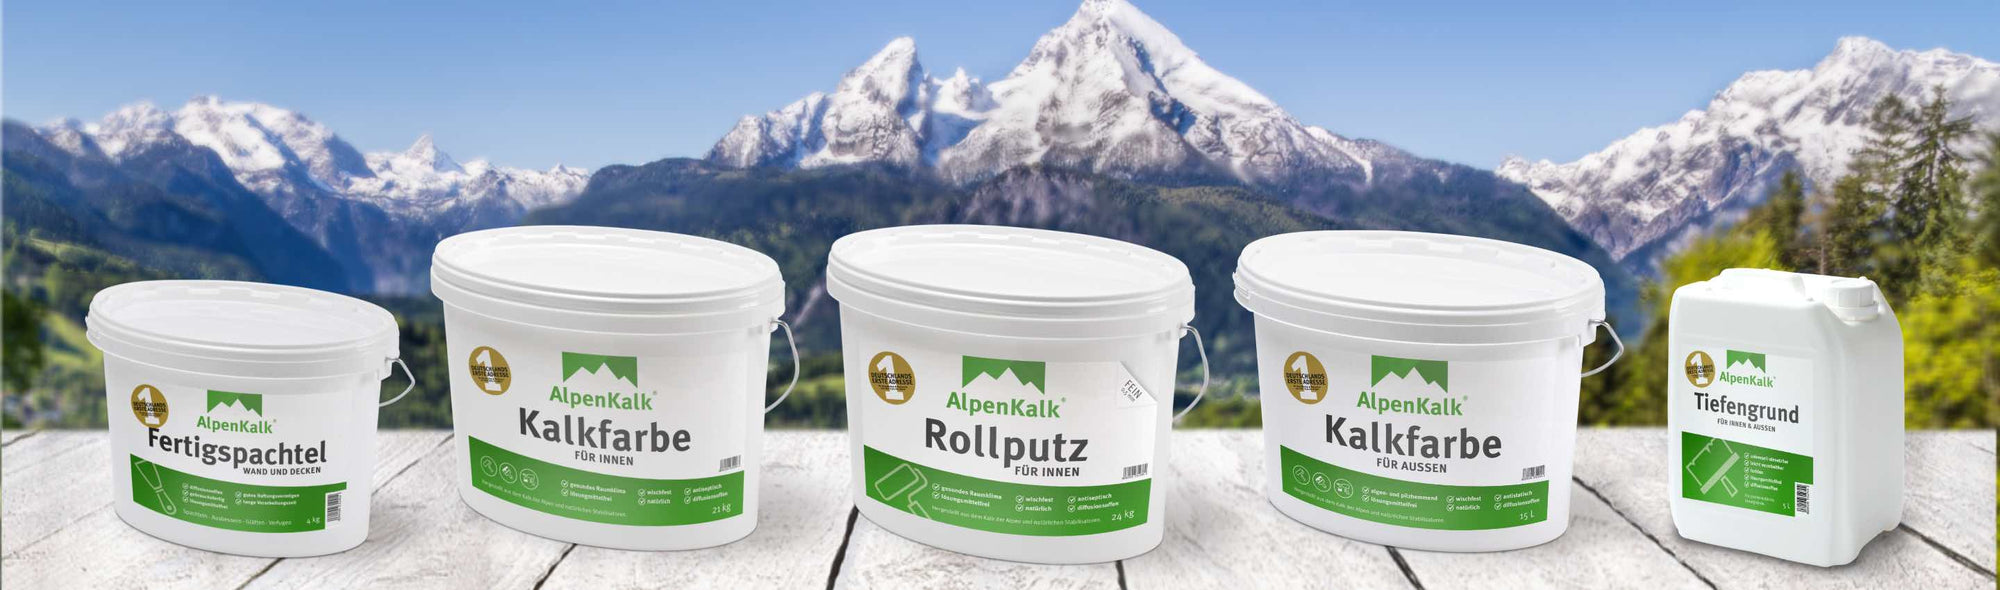 Produktsortiment der Marke AlpenKalk